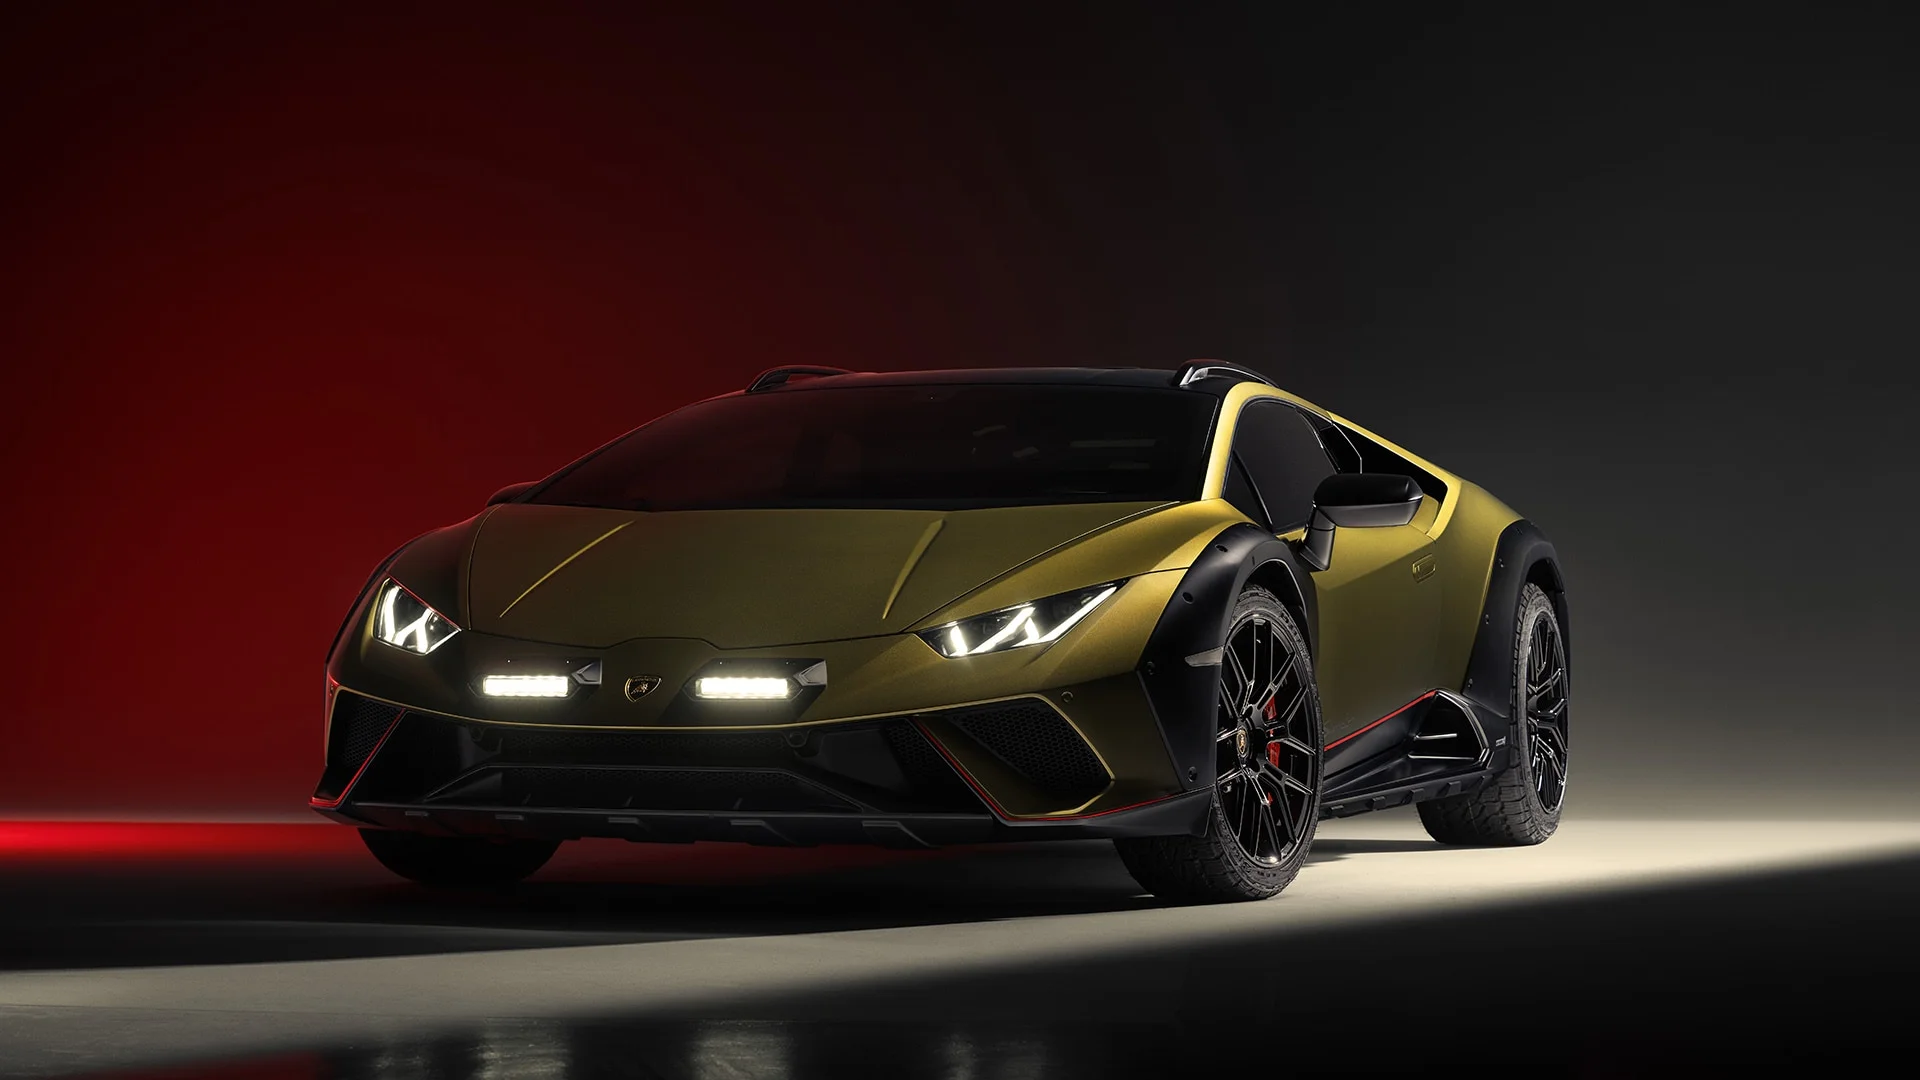 Lamborghini презентовала гиперкар для бездорожья